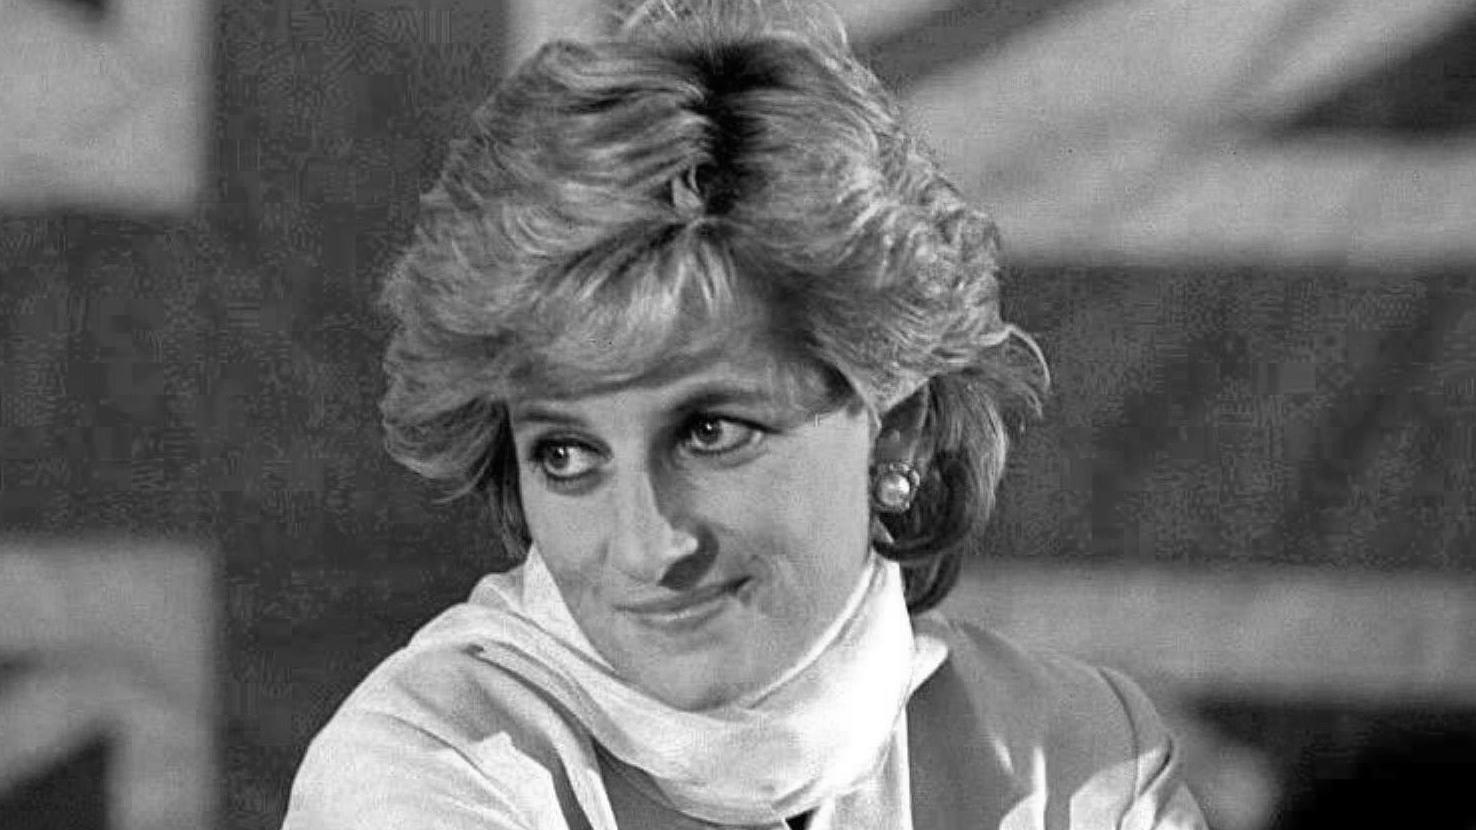 ARCHIV - 22.02.1996, Pakistan, Lahore: Prinzessin Diana vor der britischen Fahne. (Zu dpa: «Kristen Stewart zeigt sich als Prinzessin Diana in «Spencer»») Foto: John Giles/PA/epa/dpa +++ dpa-Bildfunk +++